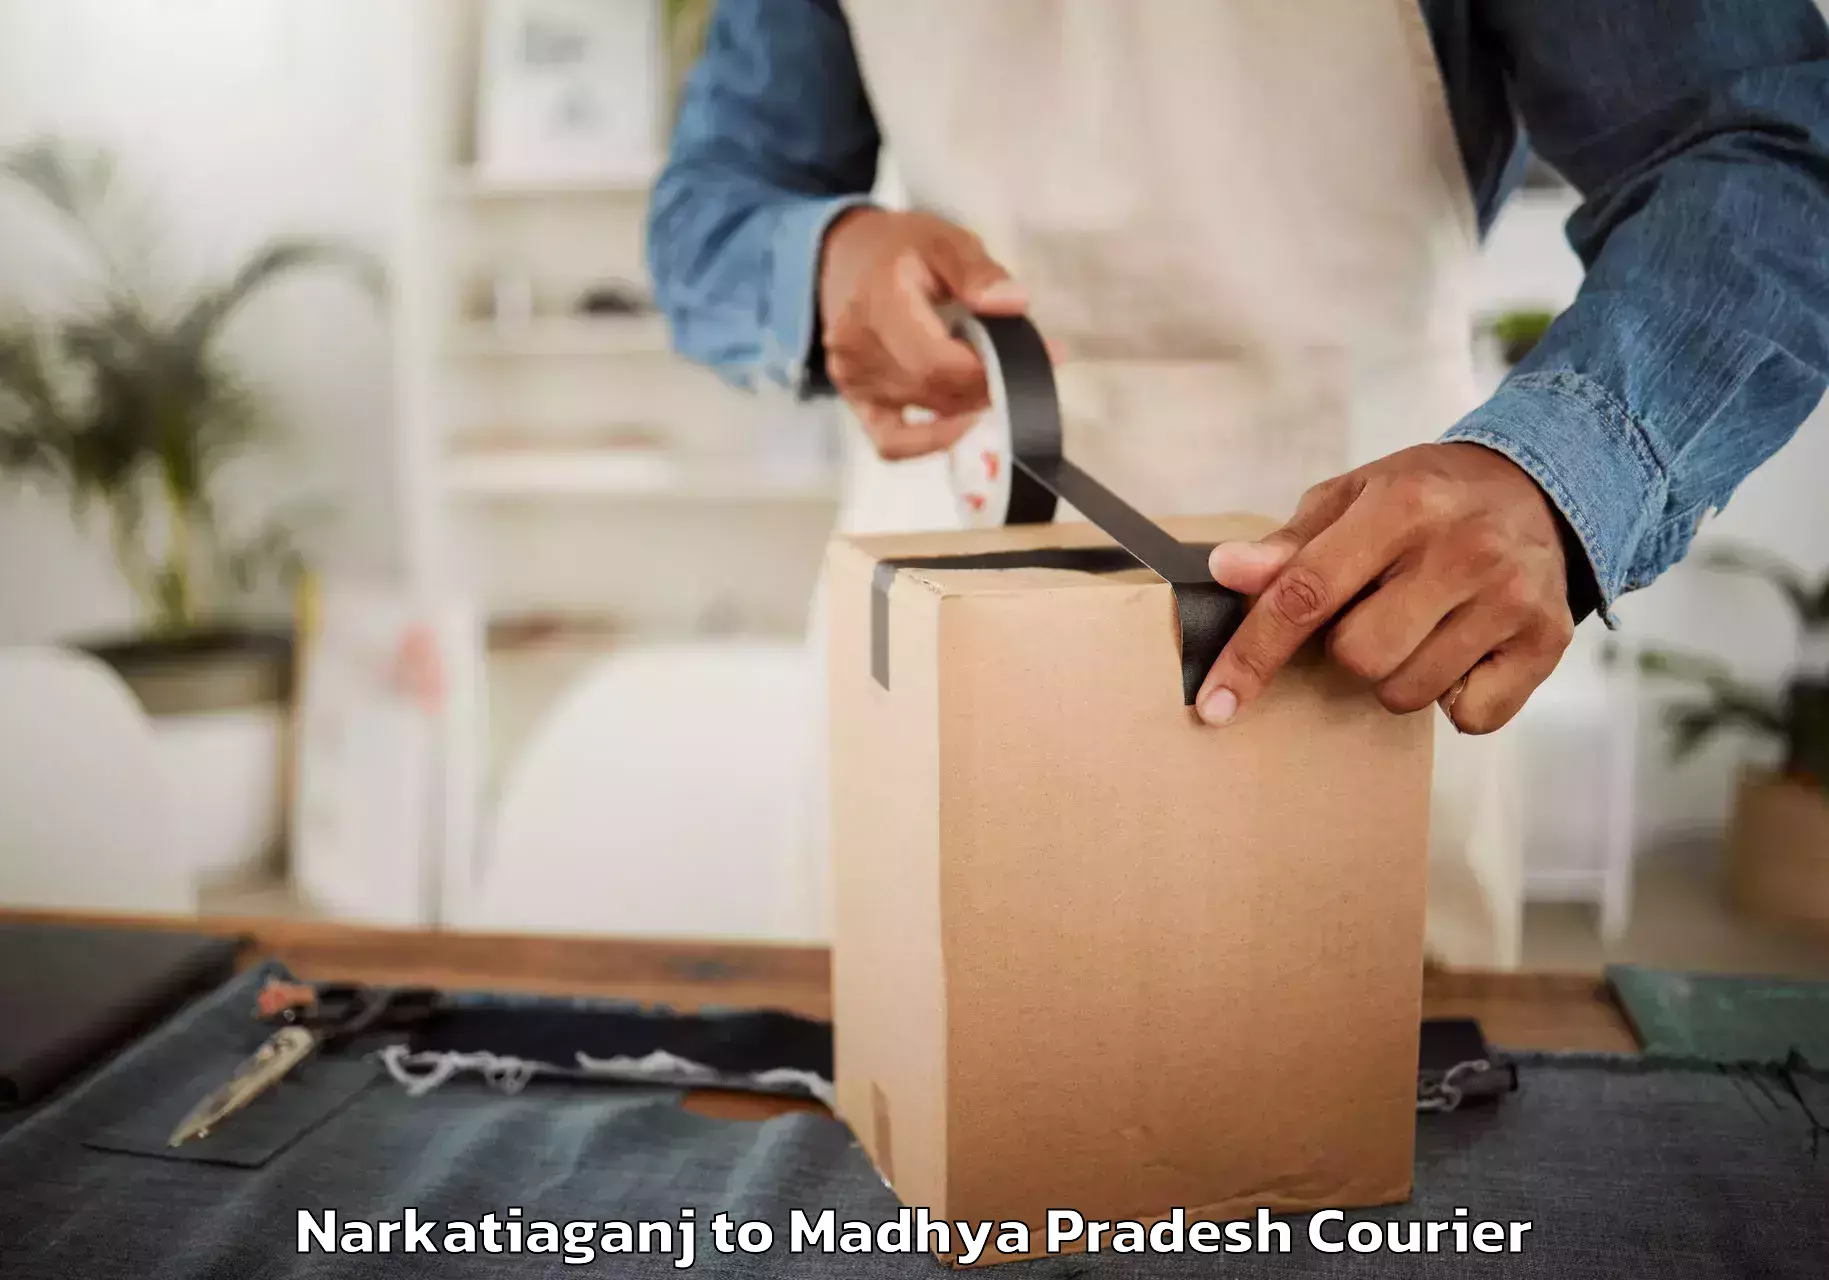 Reliable moving assistance Narkatiaganj to Madhya Pradesh